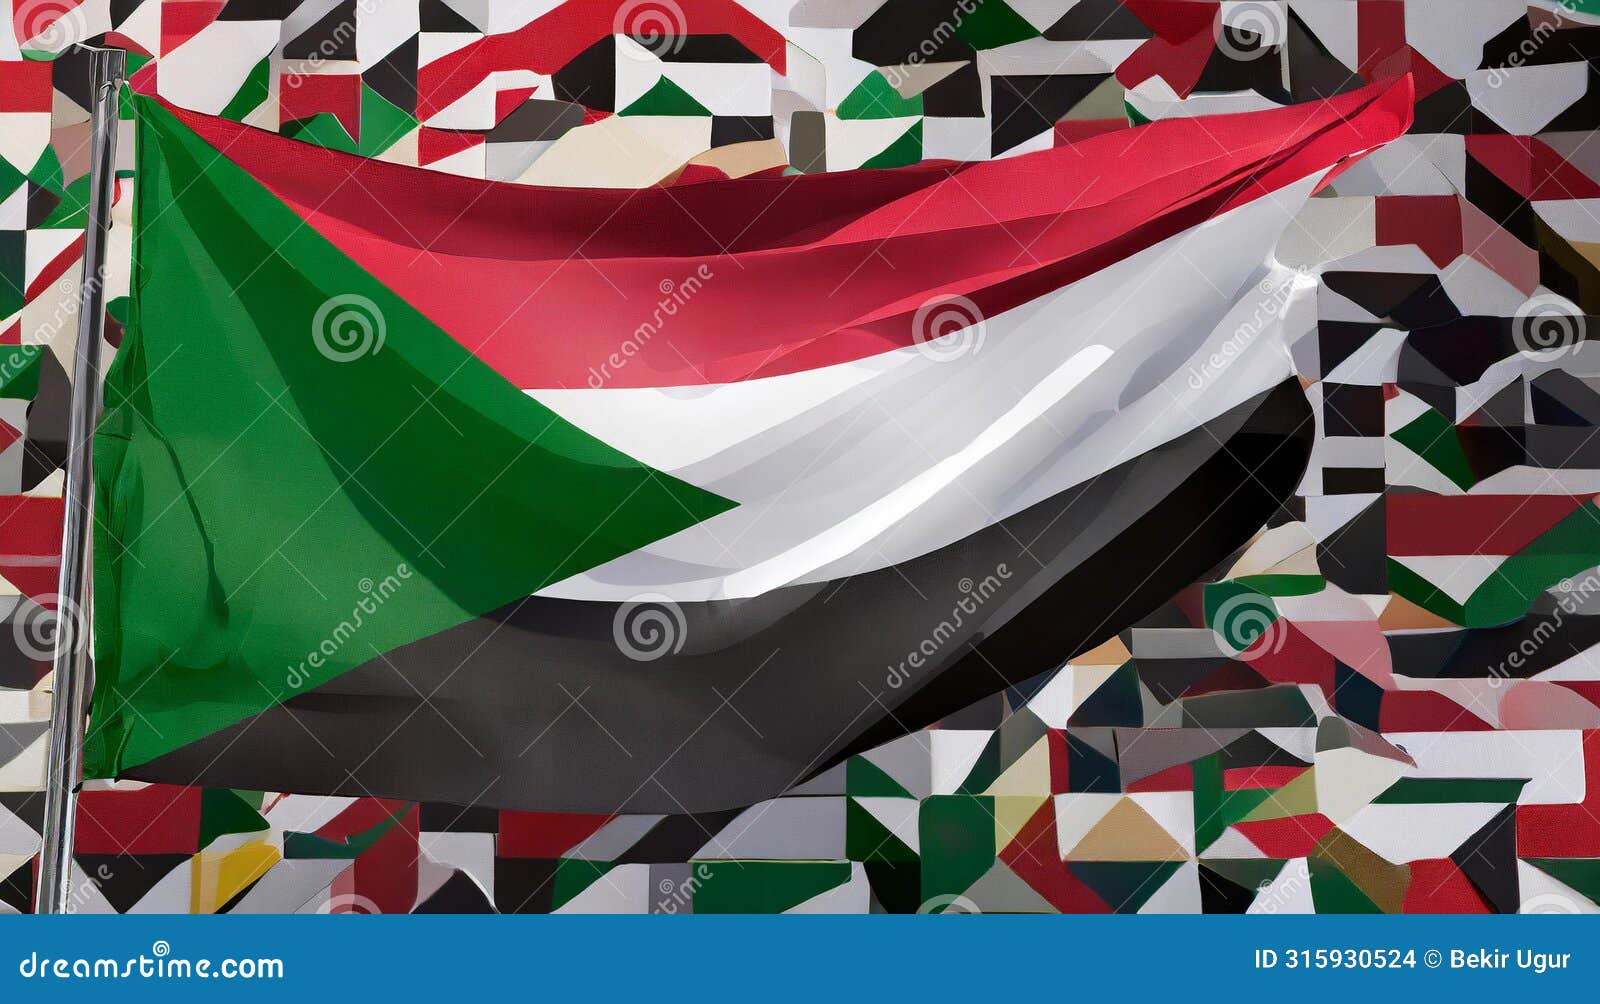 sudan flag. the national flag of sudan